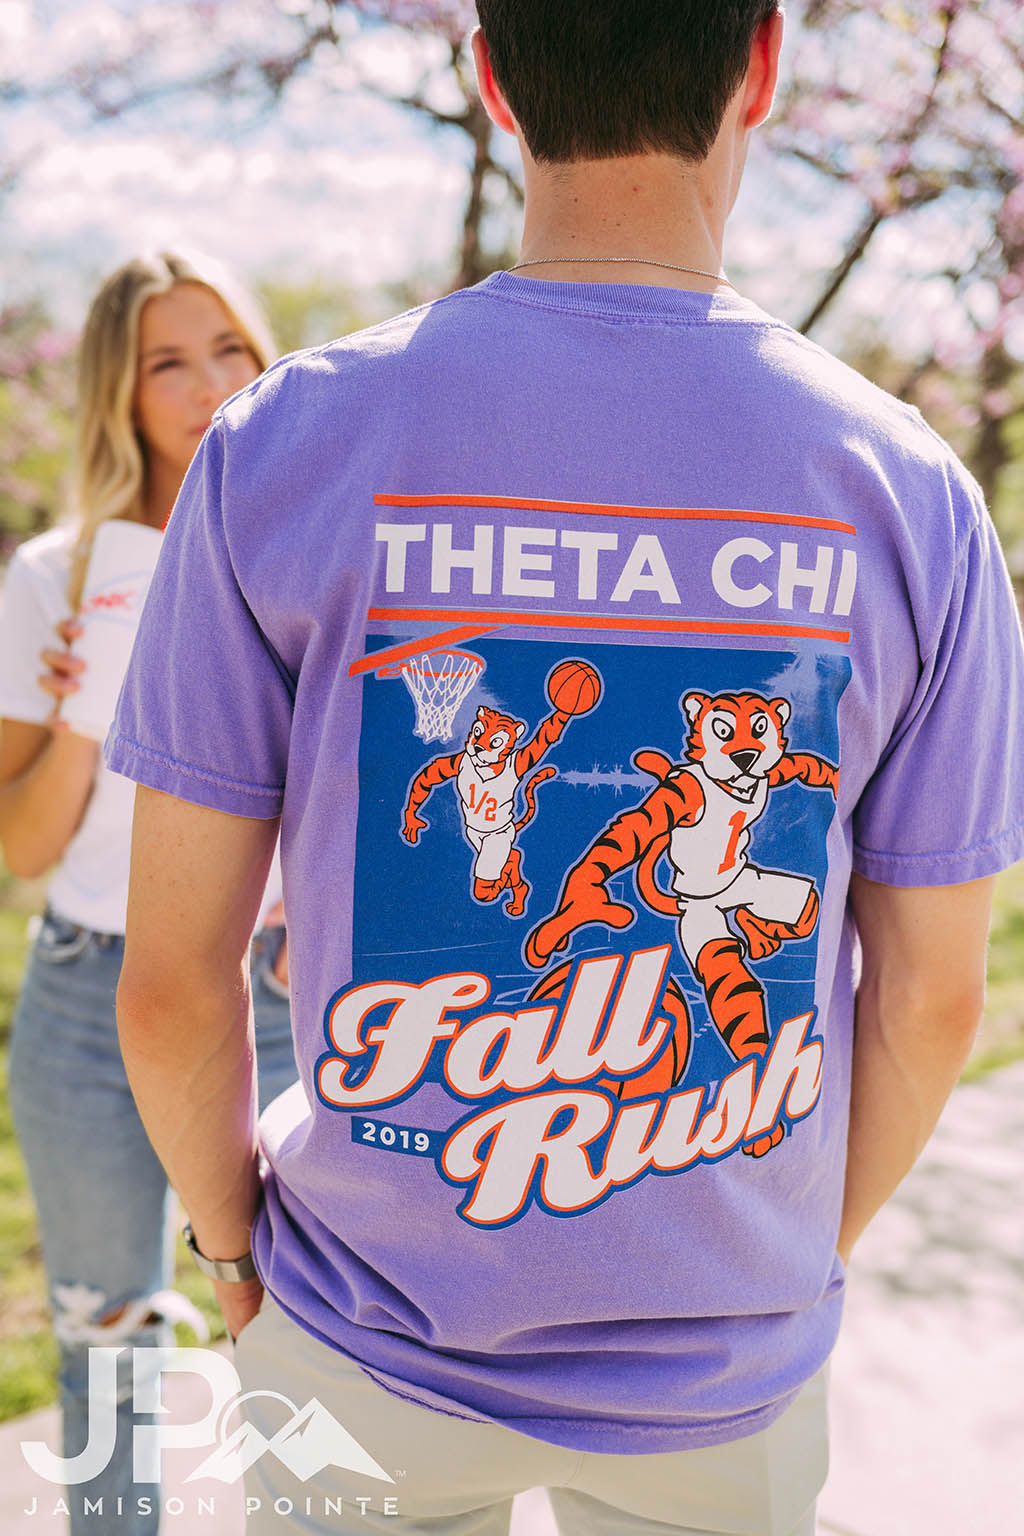 Theta Chi Fall Rush Basketball Tshirt